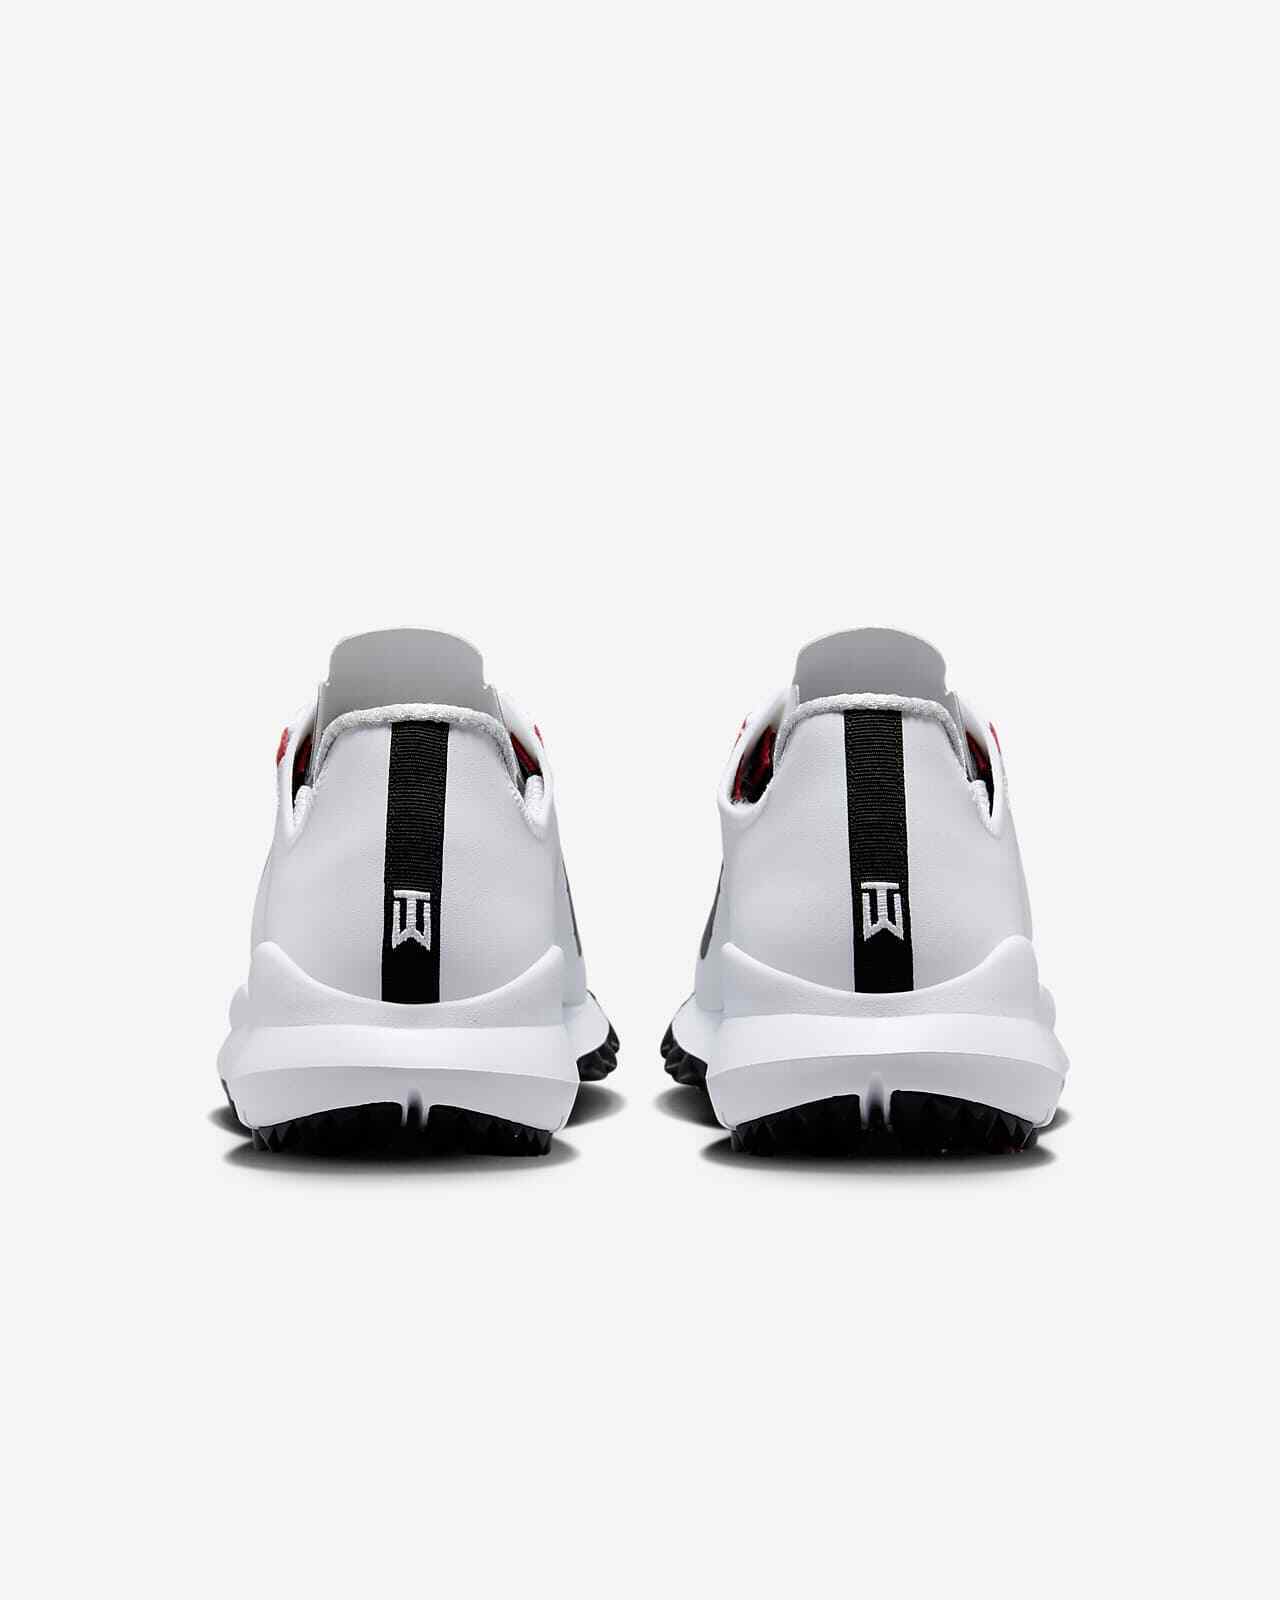 Nike Tiger Woods '13 Men's Golf Shoes(Wide) White DR5753-106 | eBay